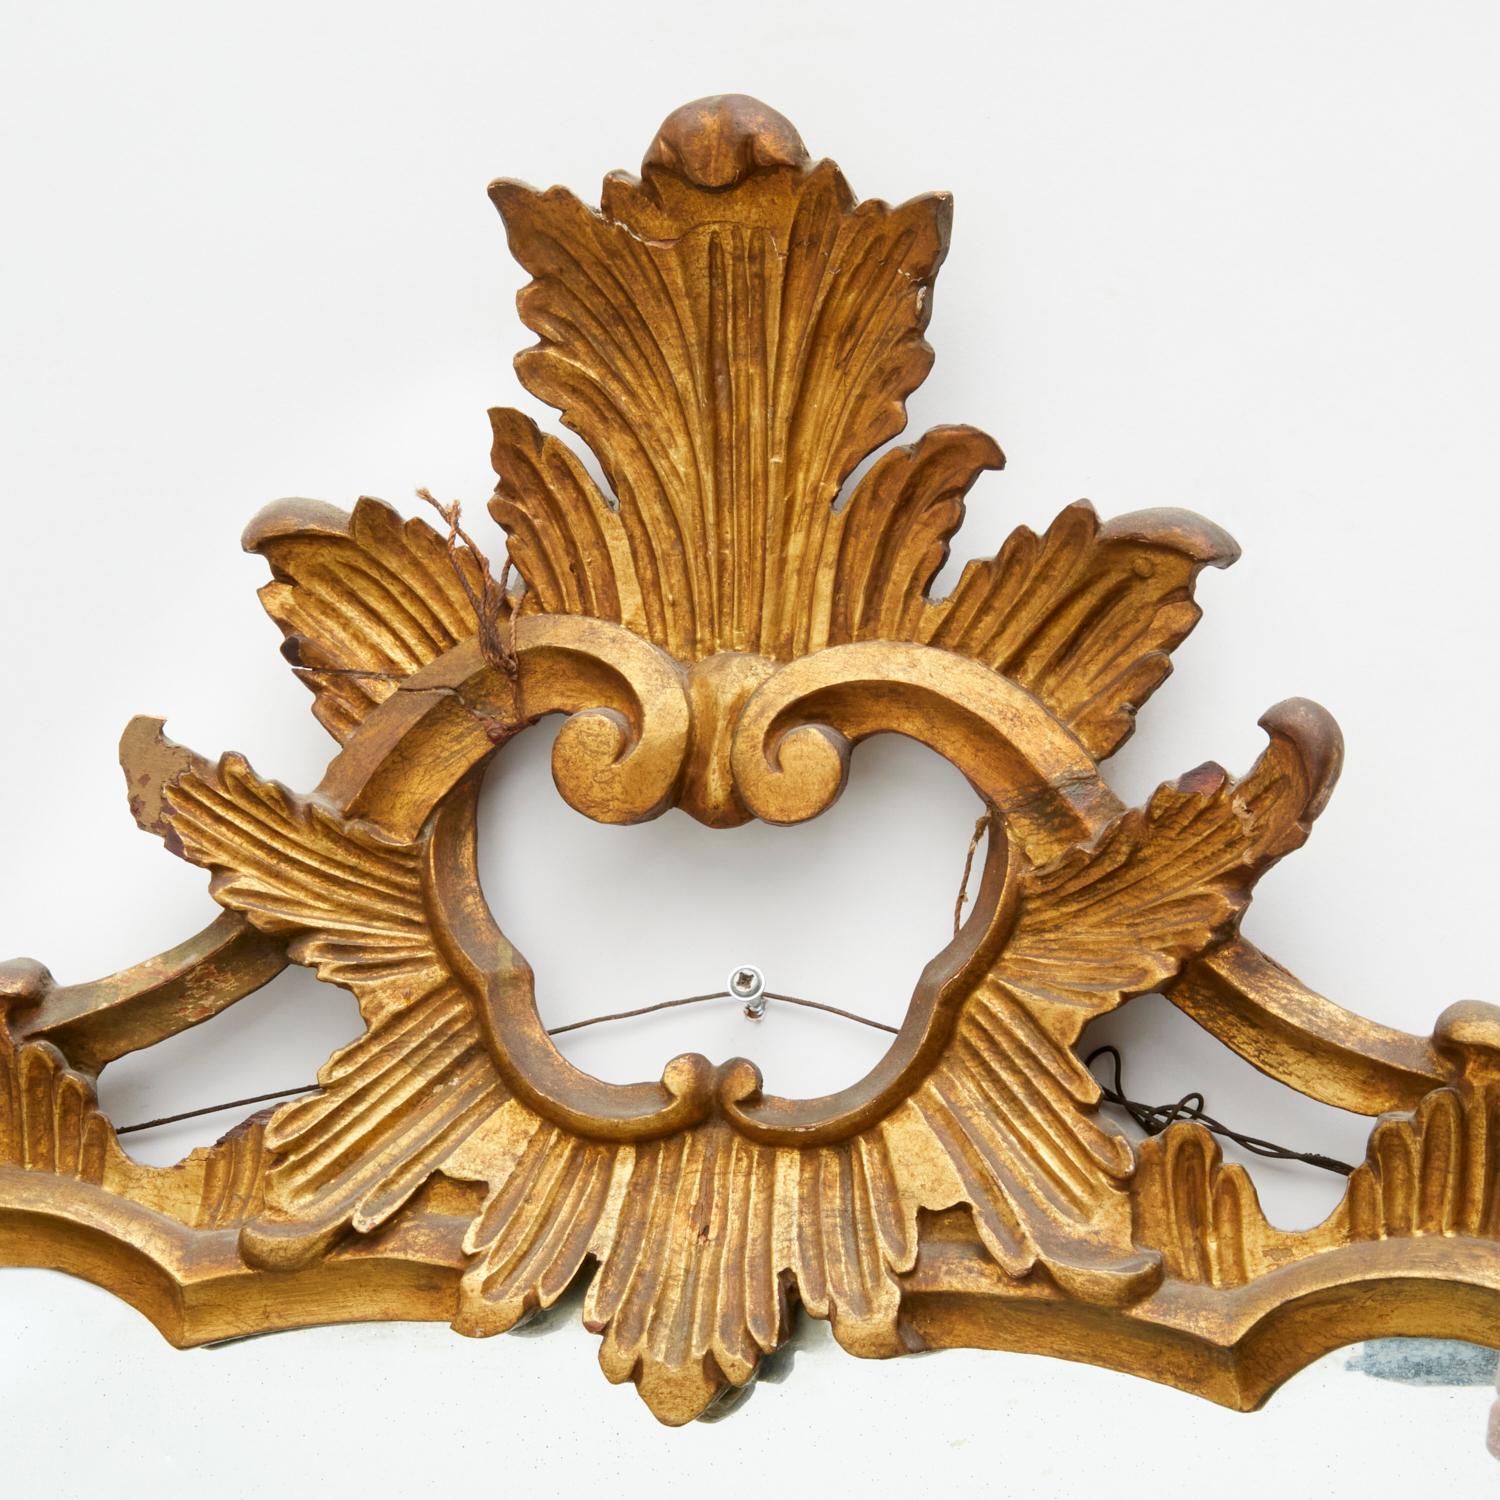 Vintage 20. Jh., Spiegel aus geschnitztem Goldholz im Stil von George III. mit durchbrochenem Rahmen aus verschnörkelten Ranken, unmarkiert.

Abmessungen:
Ca. 47 